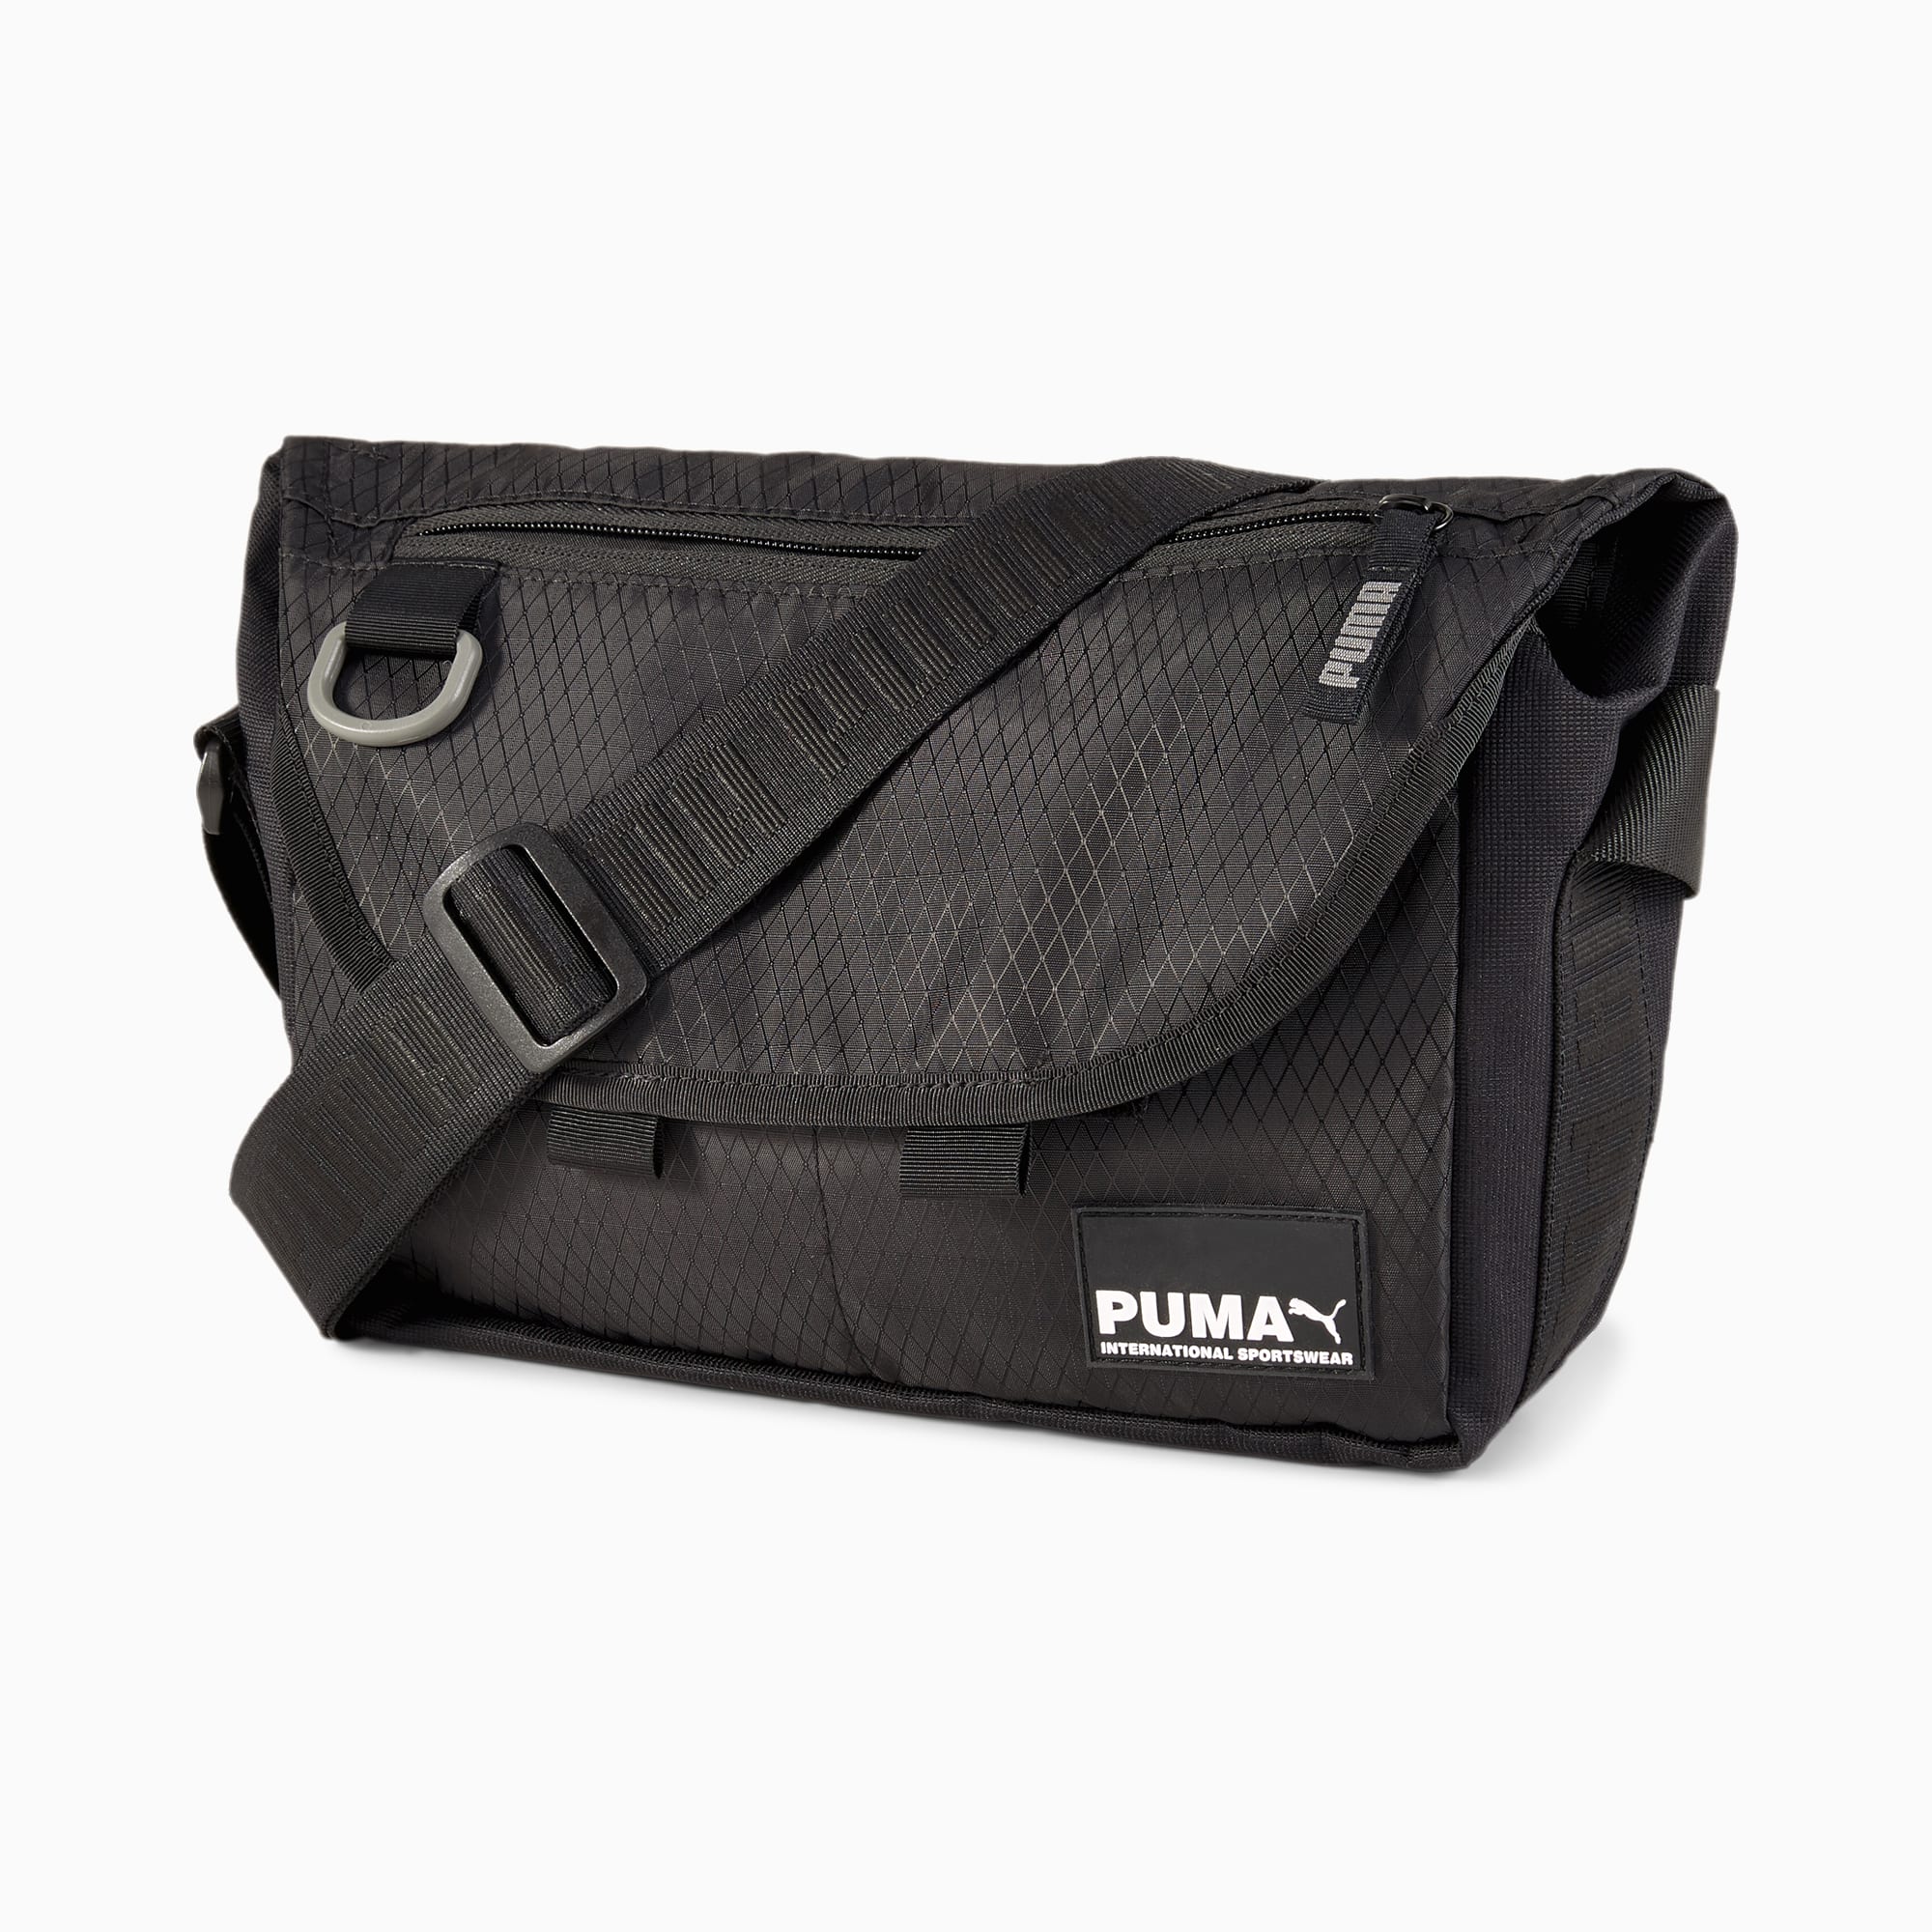 puma team messenger bag